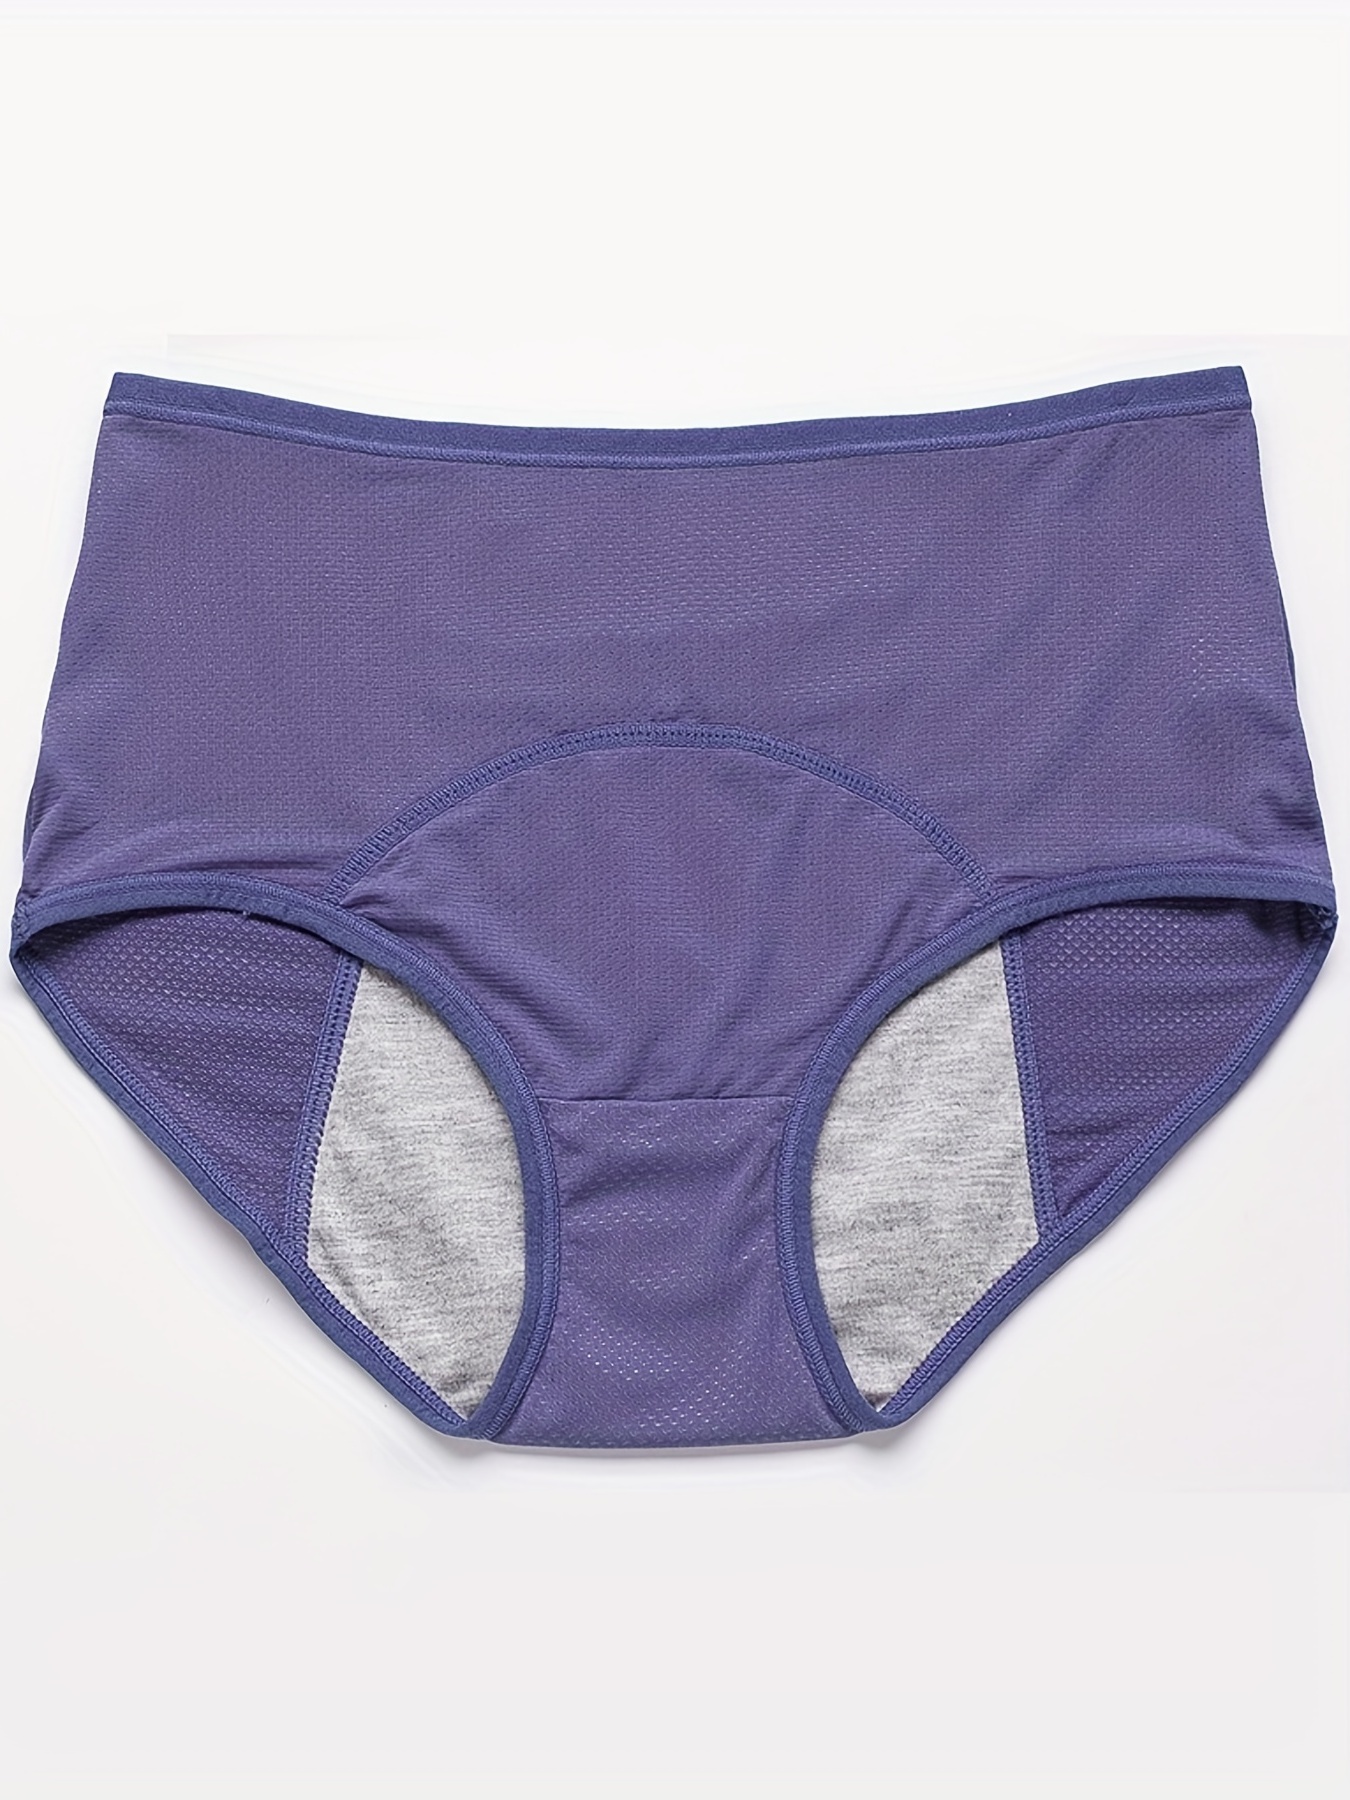 Leak Proof Menstrual Underwear, Leakproof Underwear Women